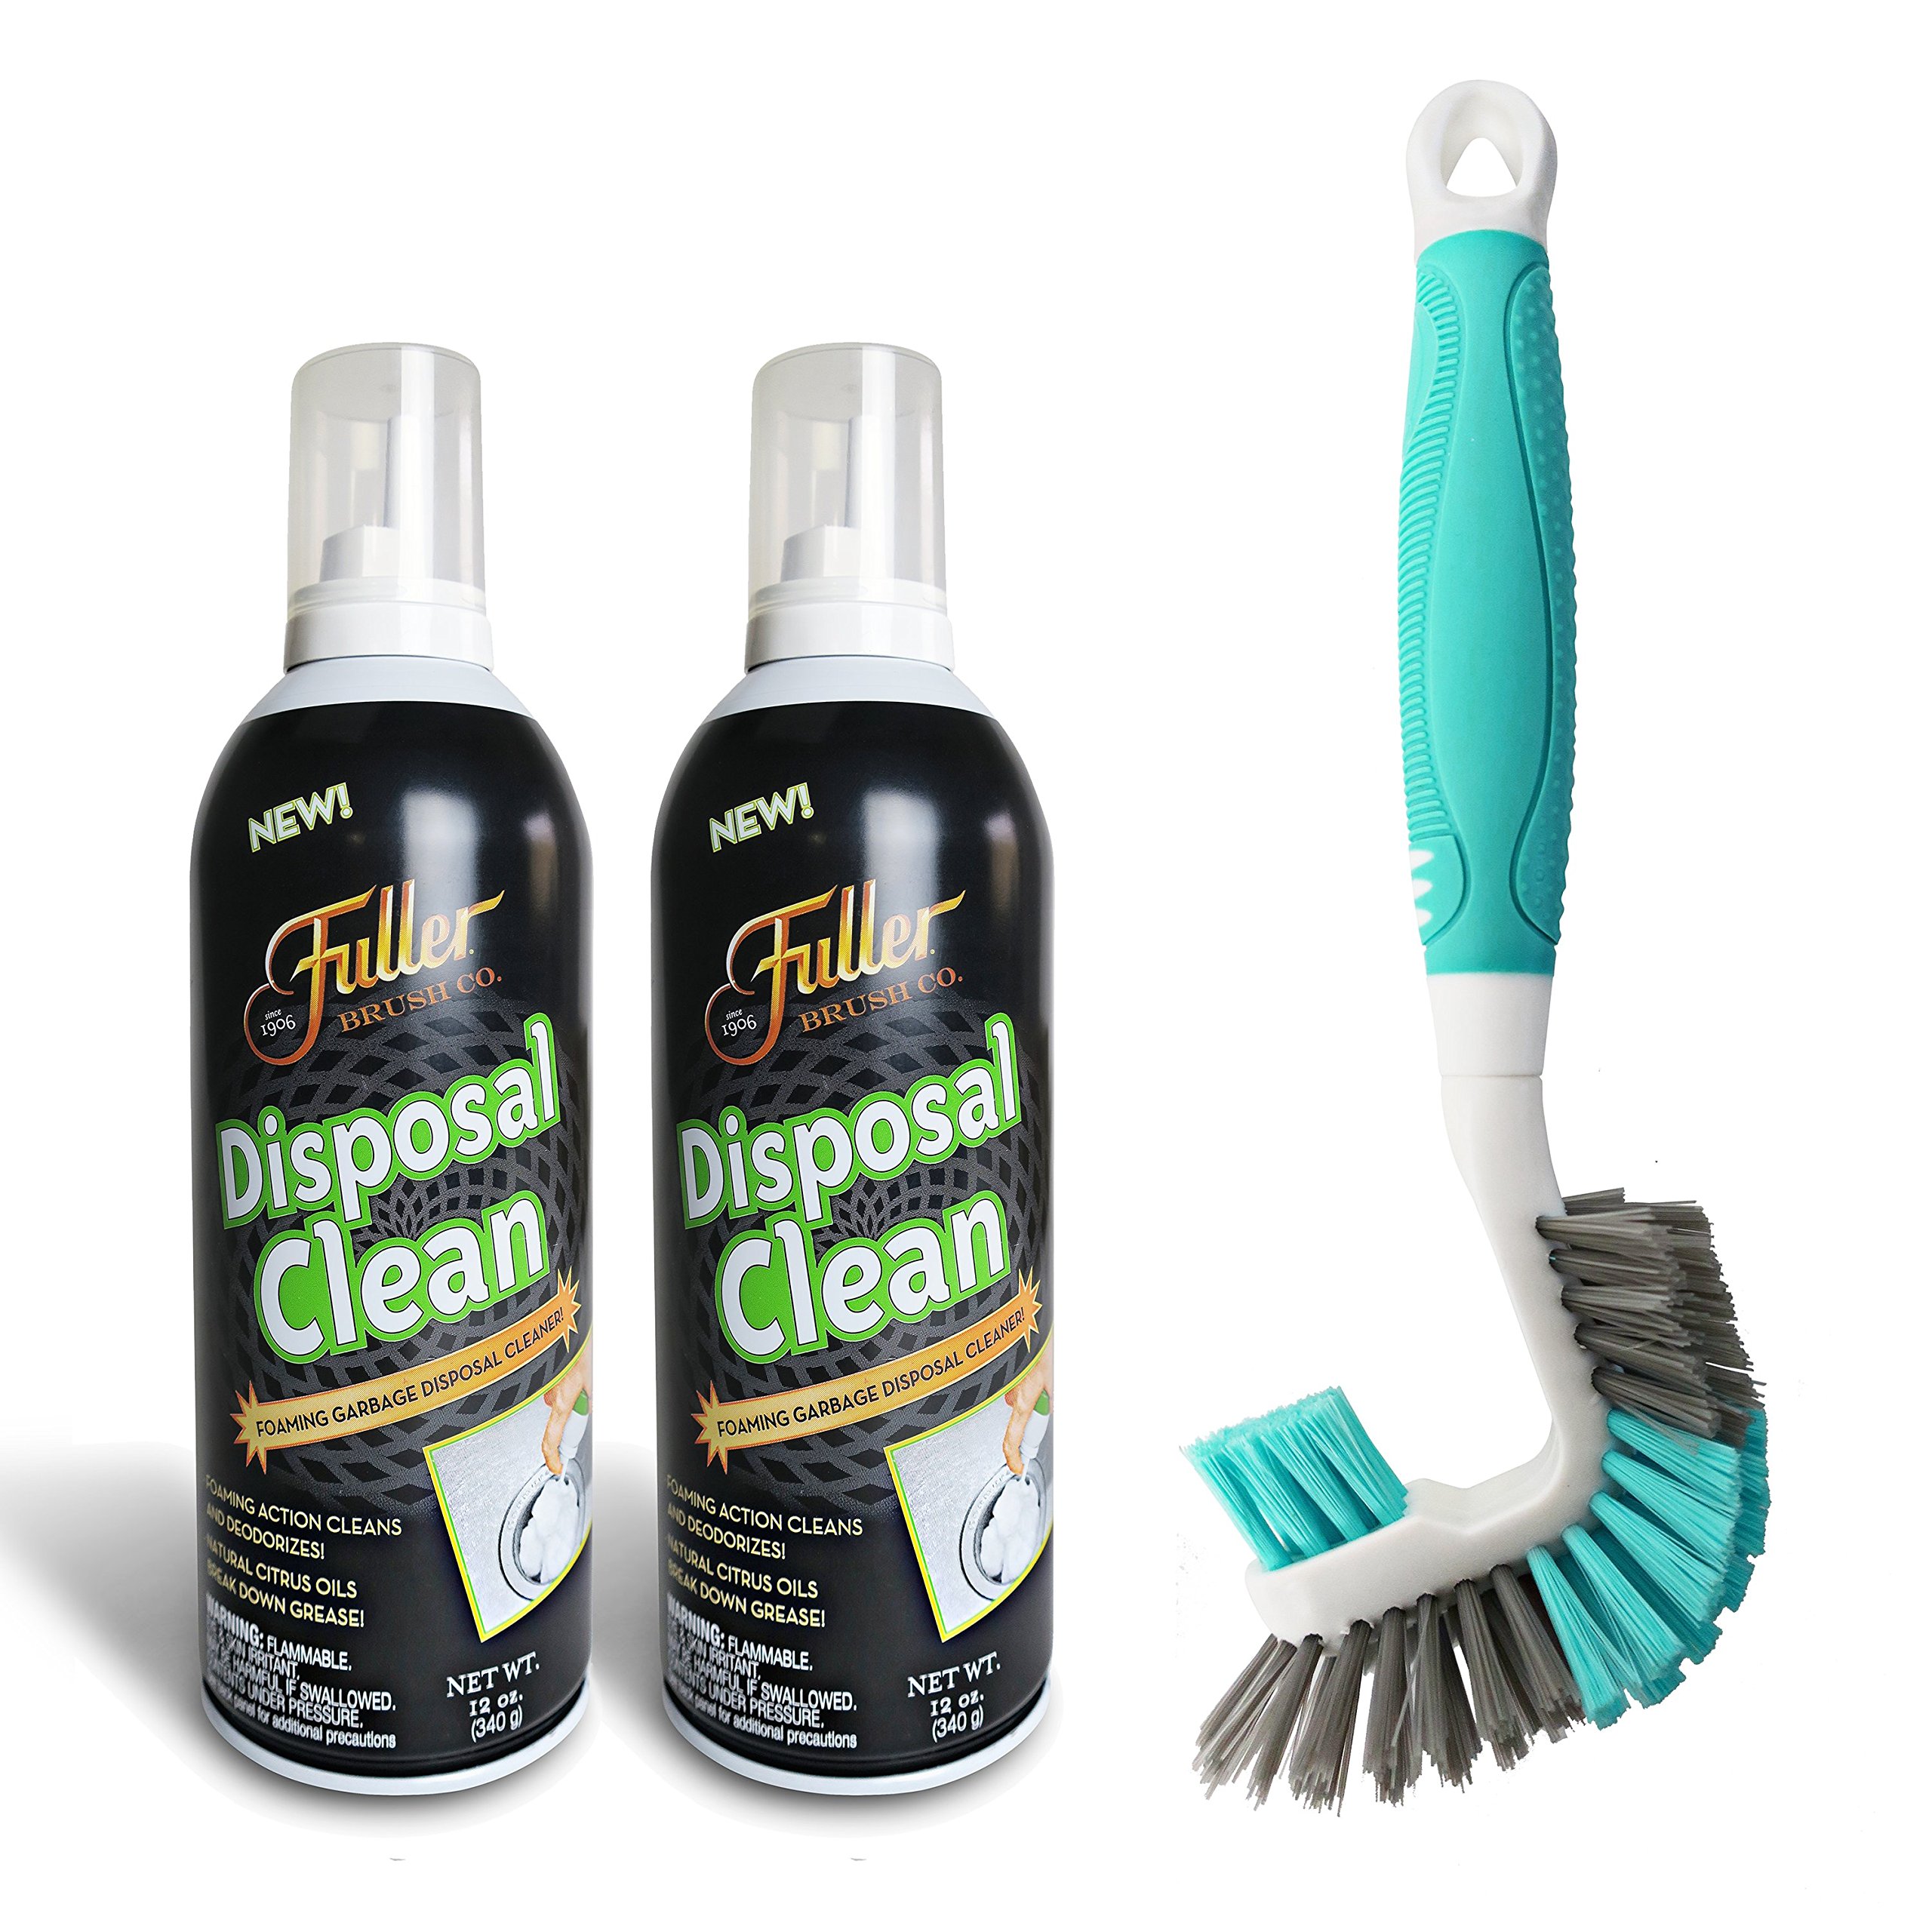 Fuller Brush Garbage Disposal Cleaner